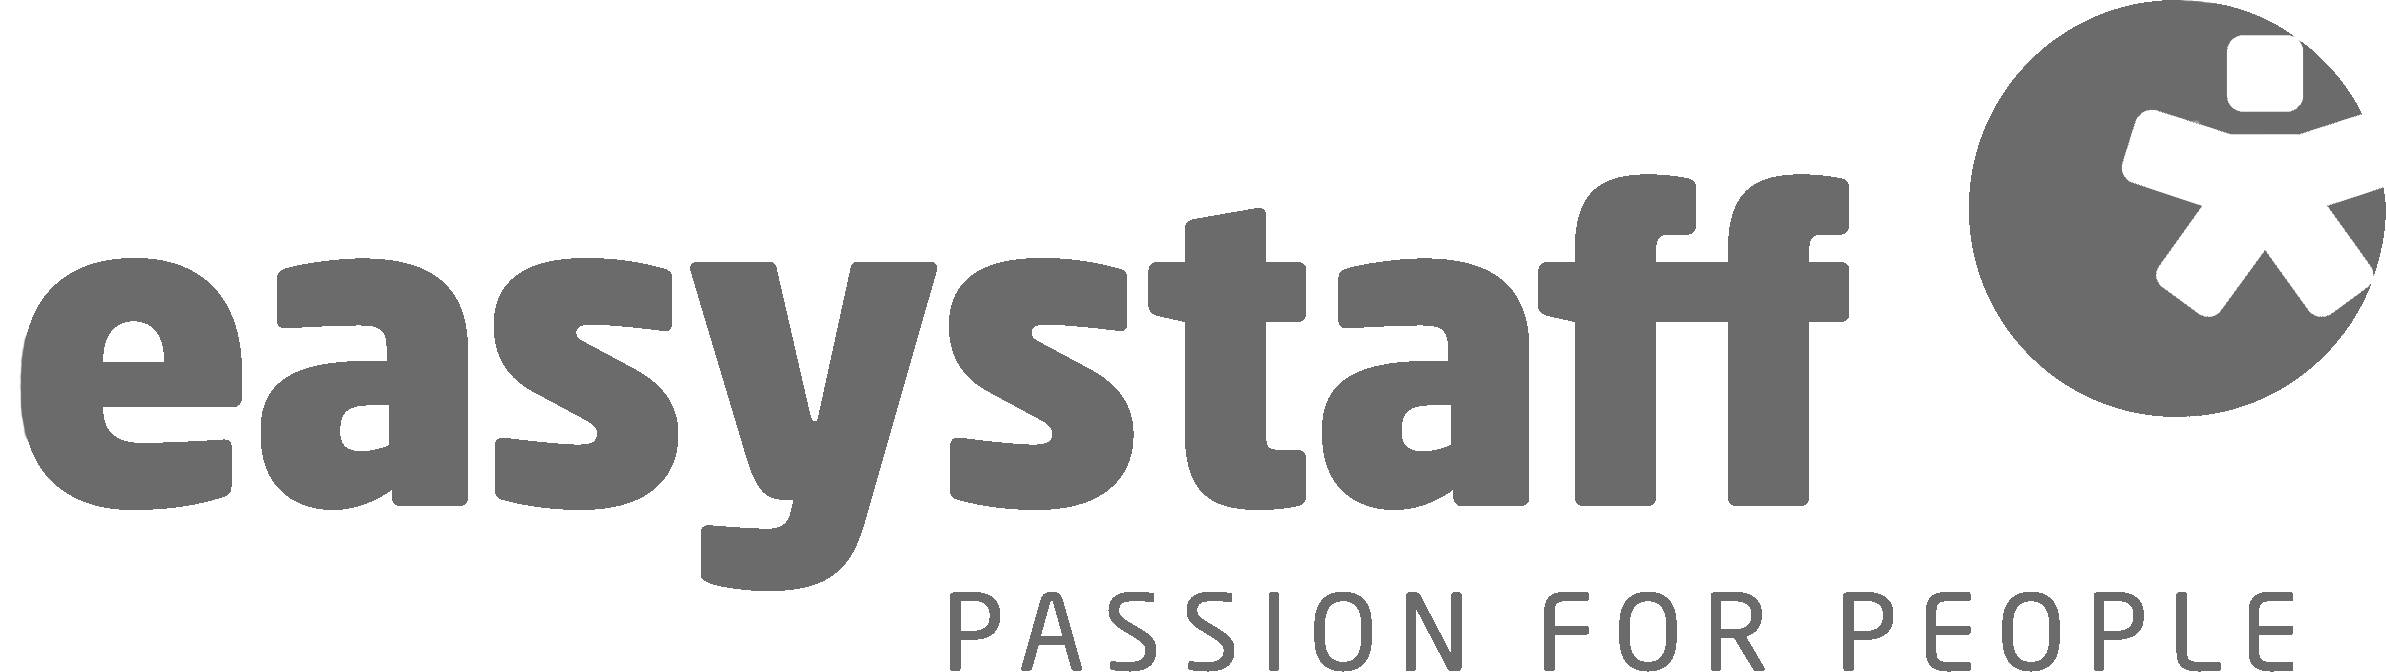 Easystaff Logo sw